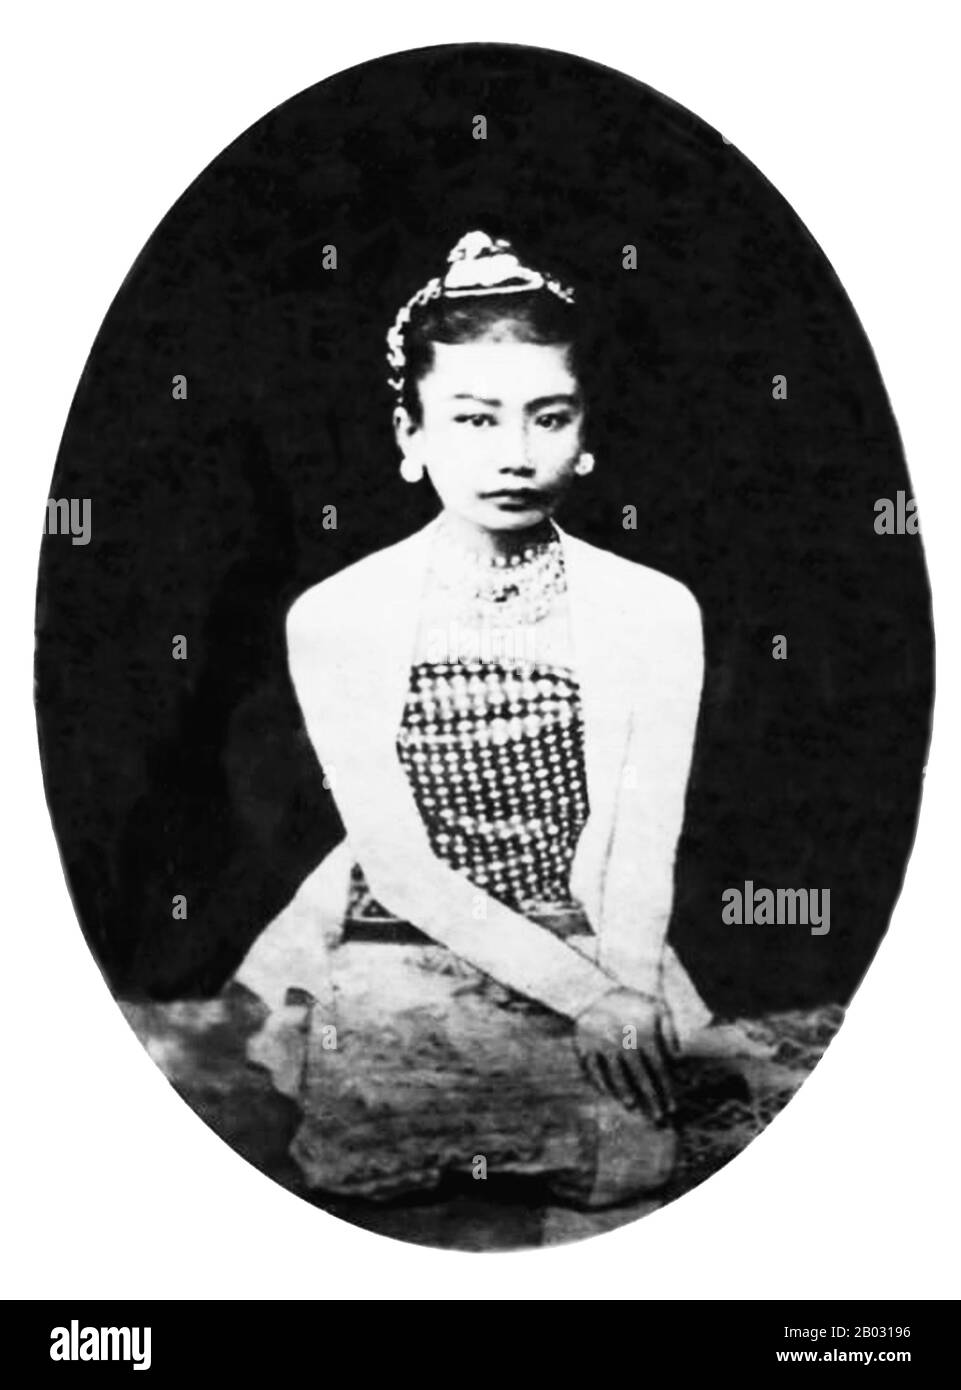 Supayalat (13. Dezember 1859 - 24. November 1925) war die letzte Königin von Birma, die in Mandalay (1878-1885) herrschte, geboren als König Mindon Min und Königin Alenandaw. Ihre Regierungszeit dauerte nur sieben Jahre, als Thibaw Min im Dritten Anglo-Birmanischen Krieg besiegt und 1885 von den Briten zur Abdankung gezwungen wurde. Am 25. November 1885 wurden sie in einer überdachten Kutsche mitgenommen und verließen den Mandalay Palace am südlichen Tor der ummauerten Stadt entlang der Straßen, die von britischen Soldaten und ihren wahnenden Untertanen gesäumt wurden, bis zum Fluss Irrawaddy, auf den ein Dampfschiff wartete. Thibaw war 27 und Supayalat 26. Nach Jahren des e Stockfoto